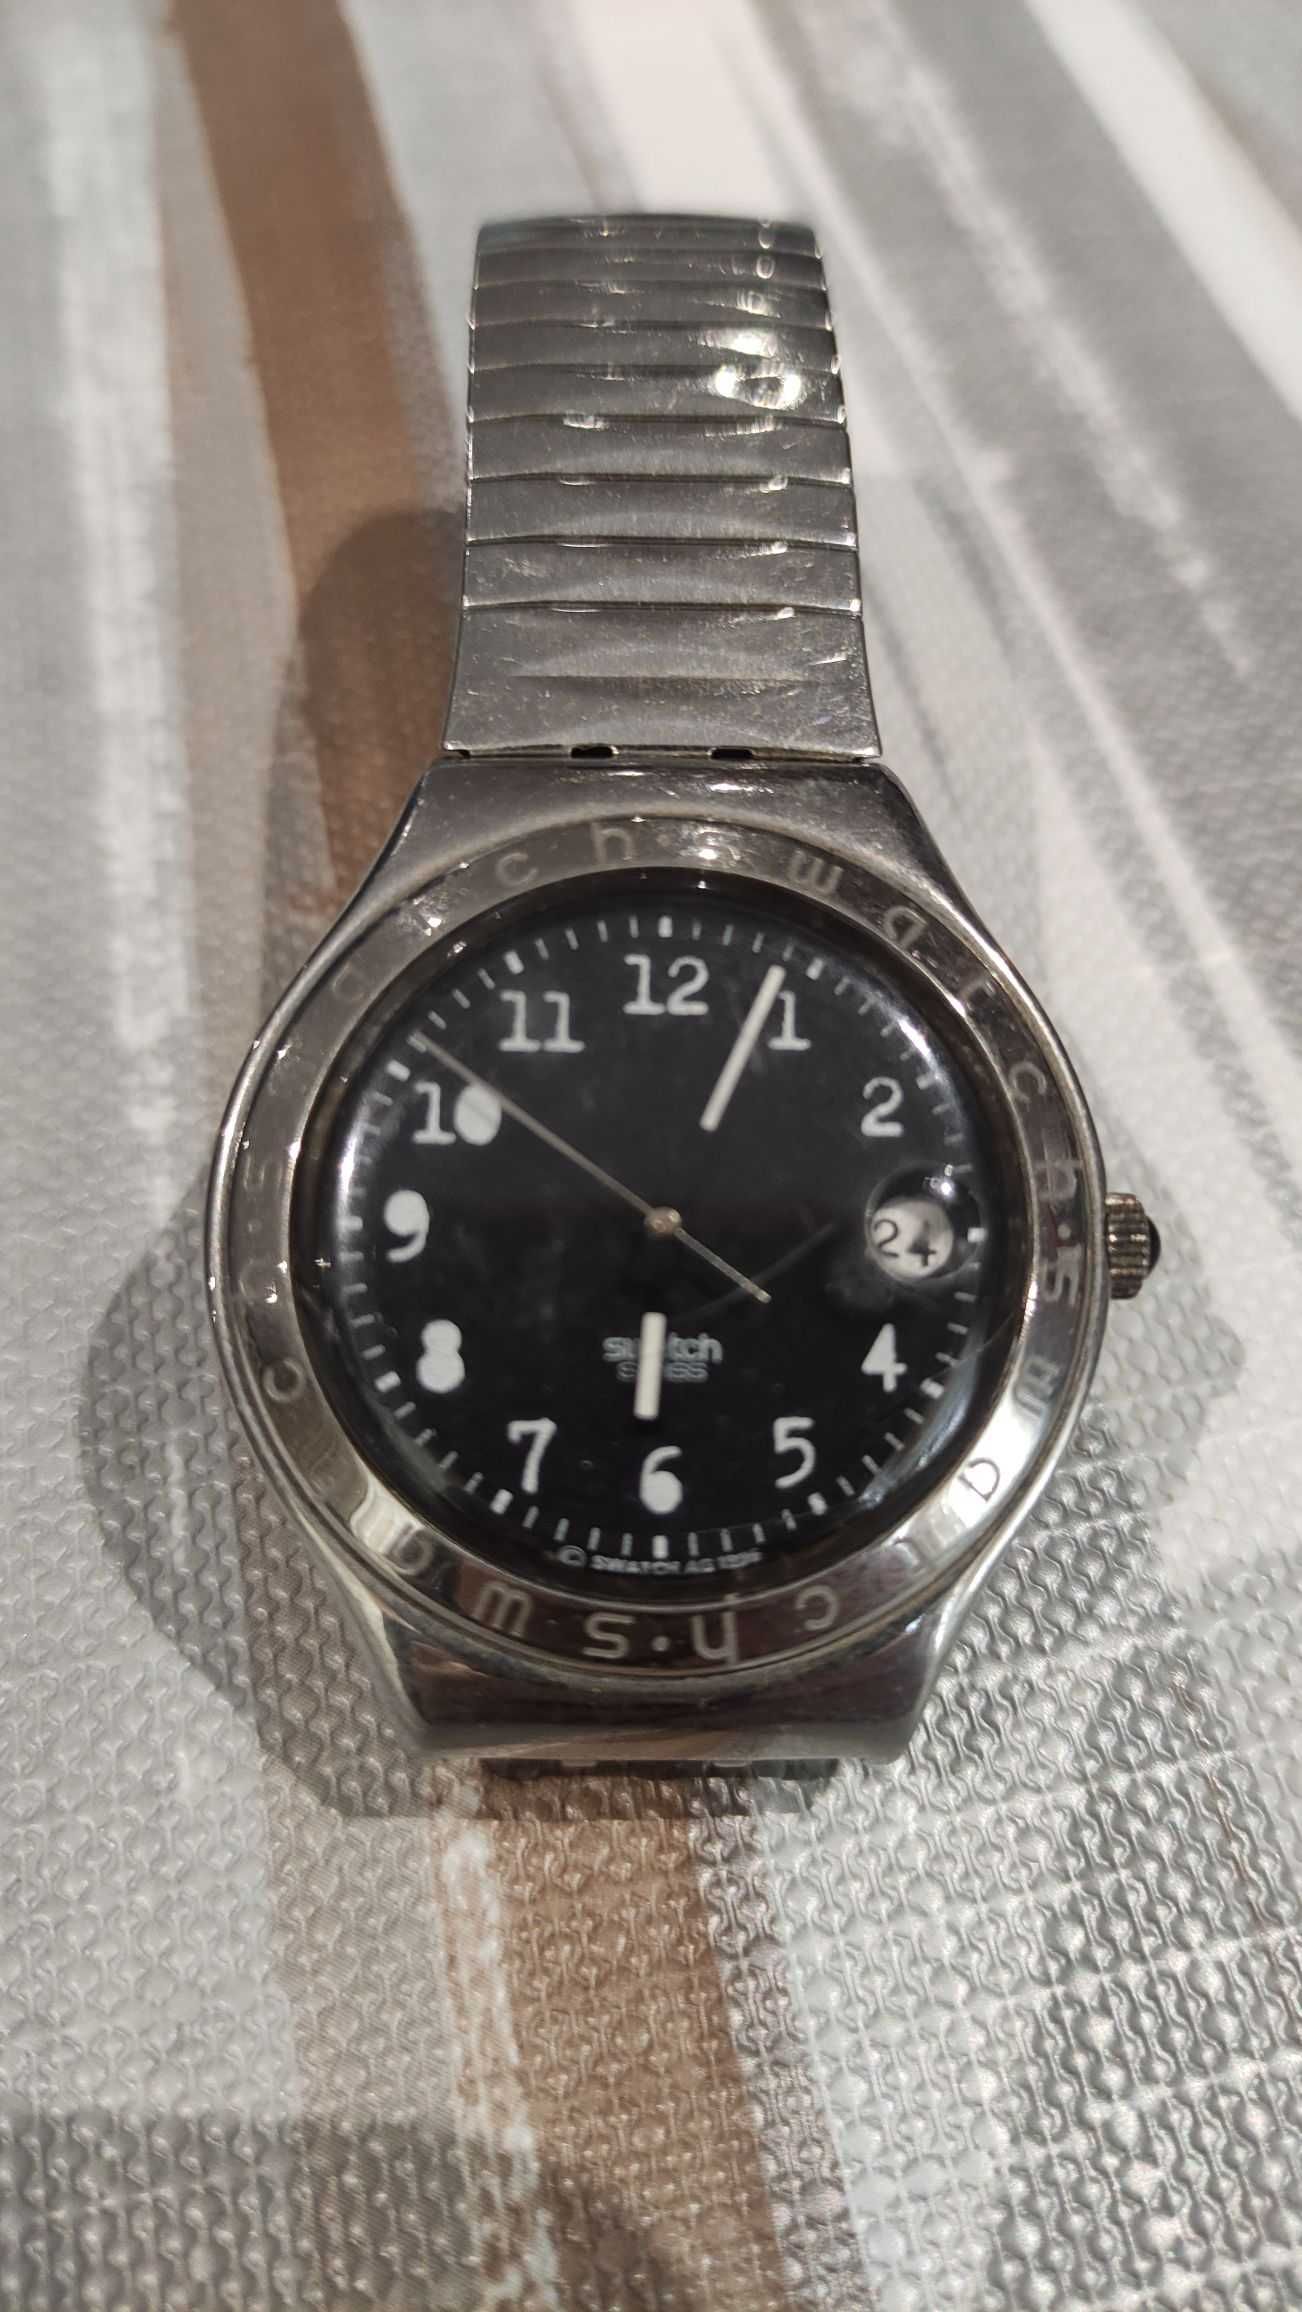 6 relógos (Citizen, D&G, Massimo Dutti, Swatch)